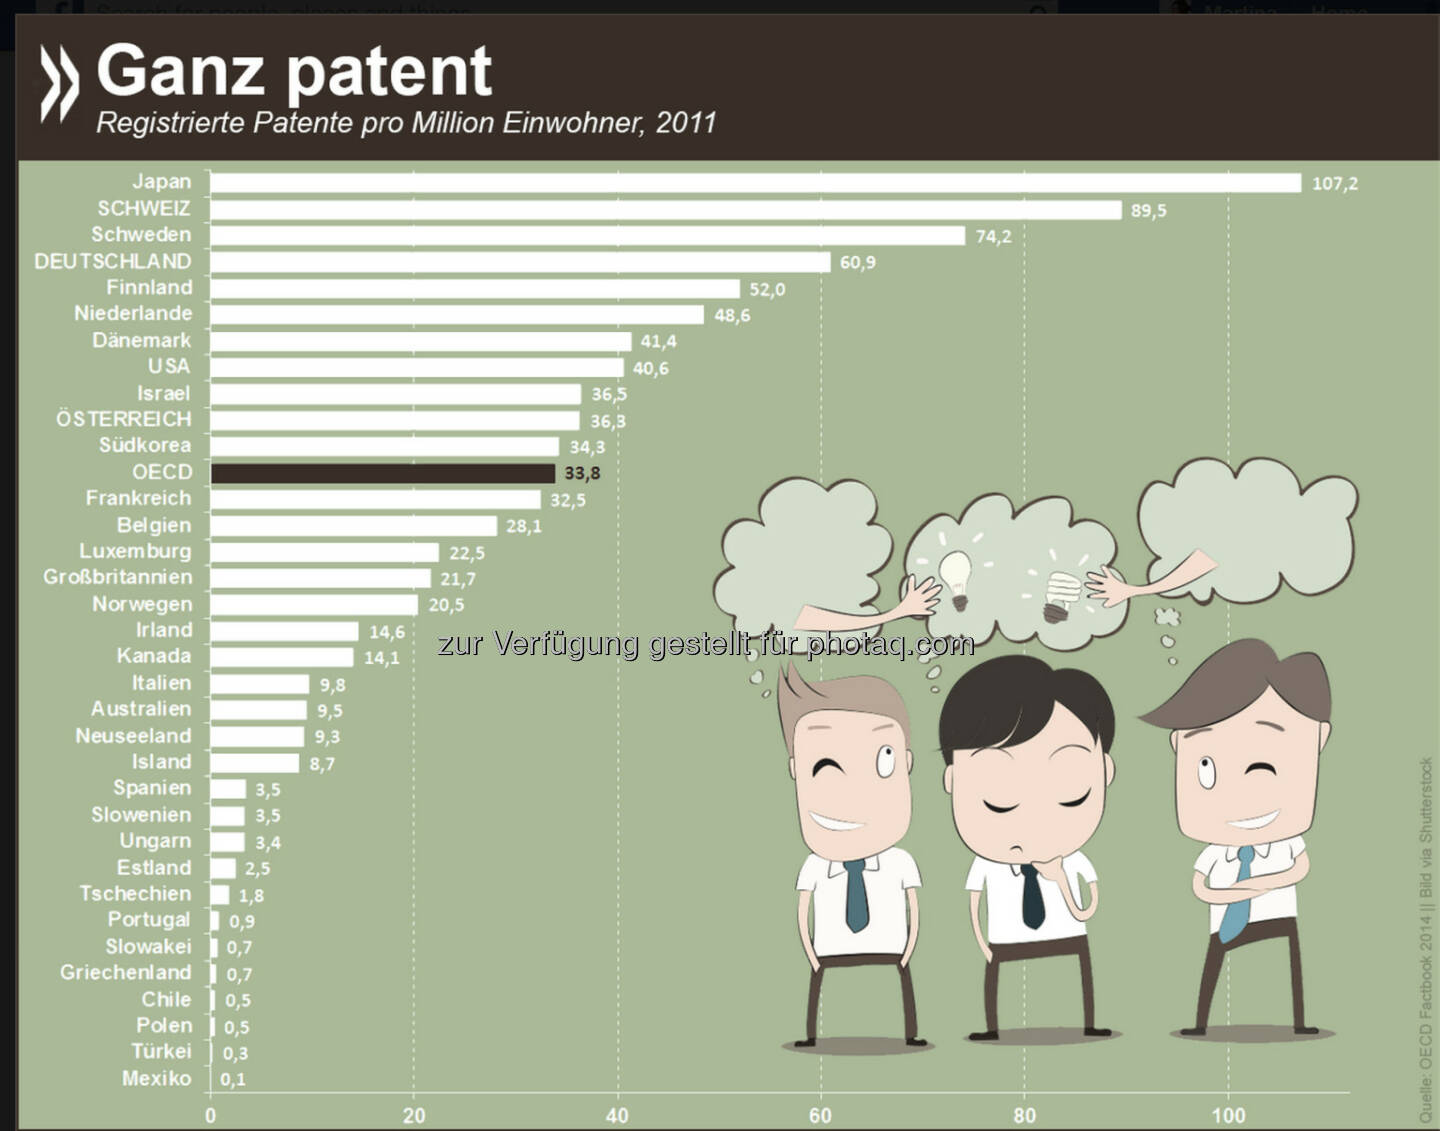 Ganz patent: Gemessen an der Einwohnerzahl ist die Anzahl der neu registrierten Patente in Japan und der Schweiz OECDweit am höchsten. Auch Deutsche und Österreicher sichern sich überdurchschnittlich oft ihre Ideen. Weltweit wurden 2011 rund 43 600 Patente angemeldet.

Mehr Informationen unter: http://bit.ly/1DUuszn